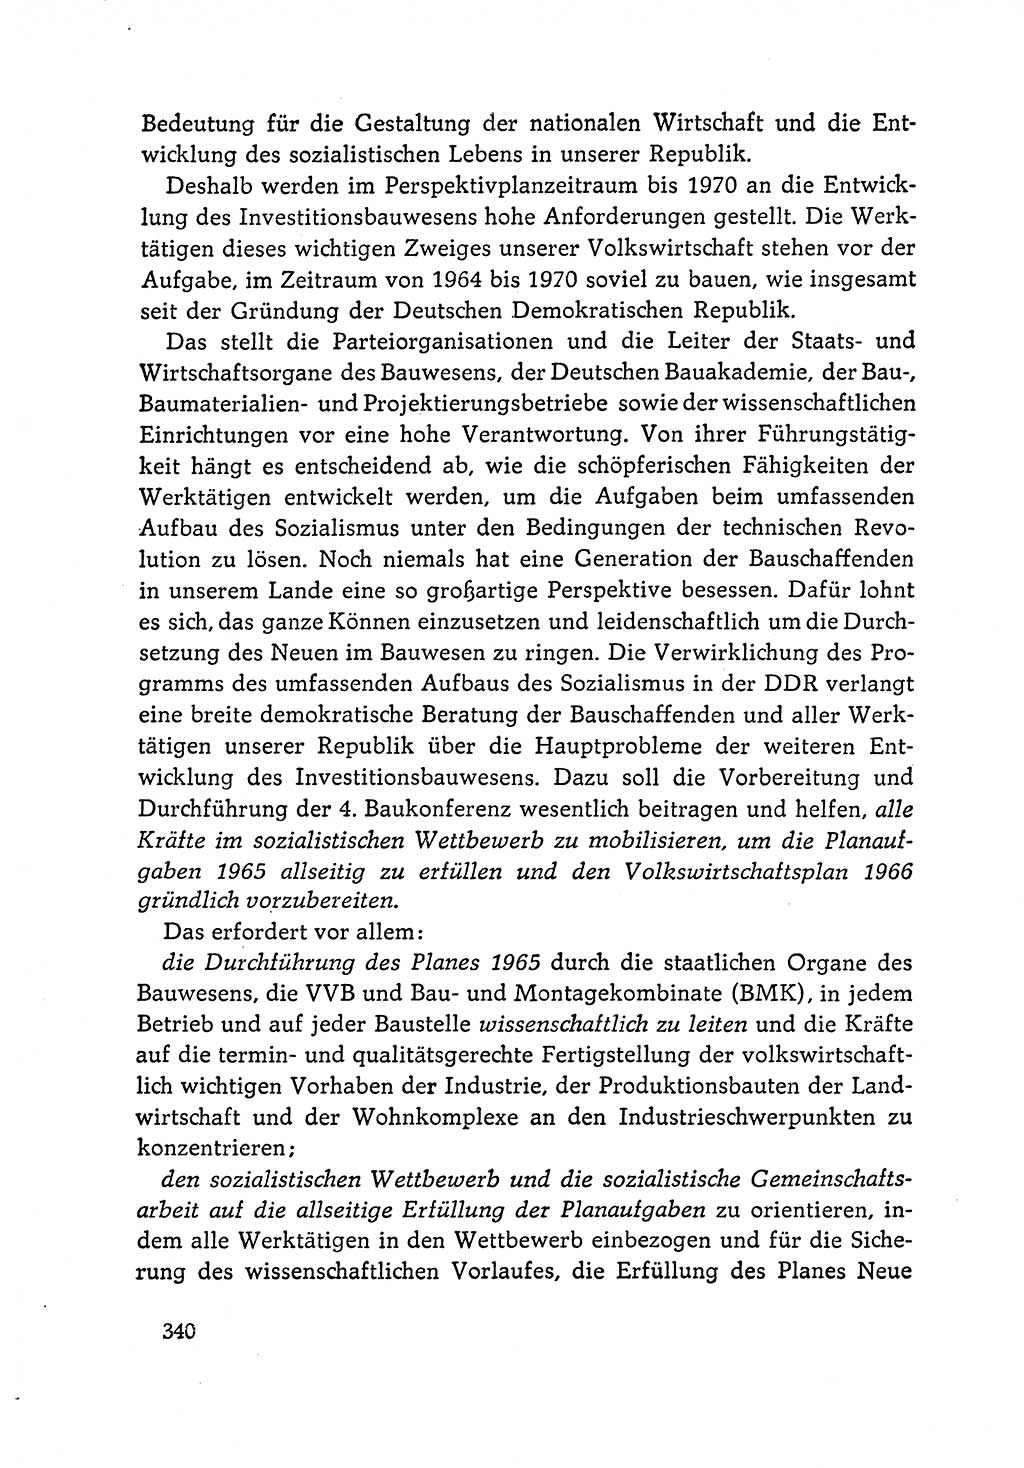 Dokumente der Sozialistischen Einheitspartei Deutschlands (SED) [Deutsche Demokratische Republik (DDR)] 1964-1965, Seite 340 (Dok. SED DDR 1964-1965, S. 340)